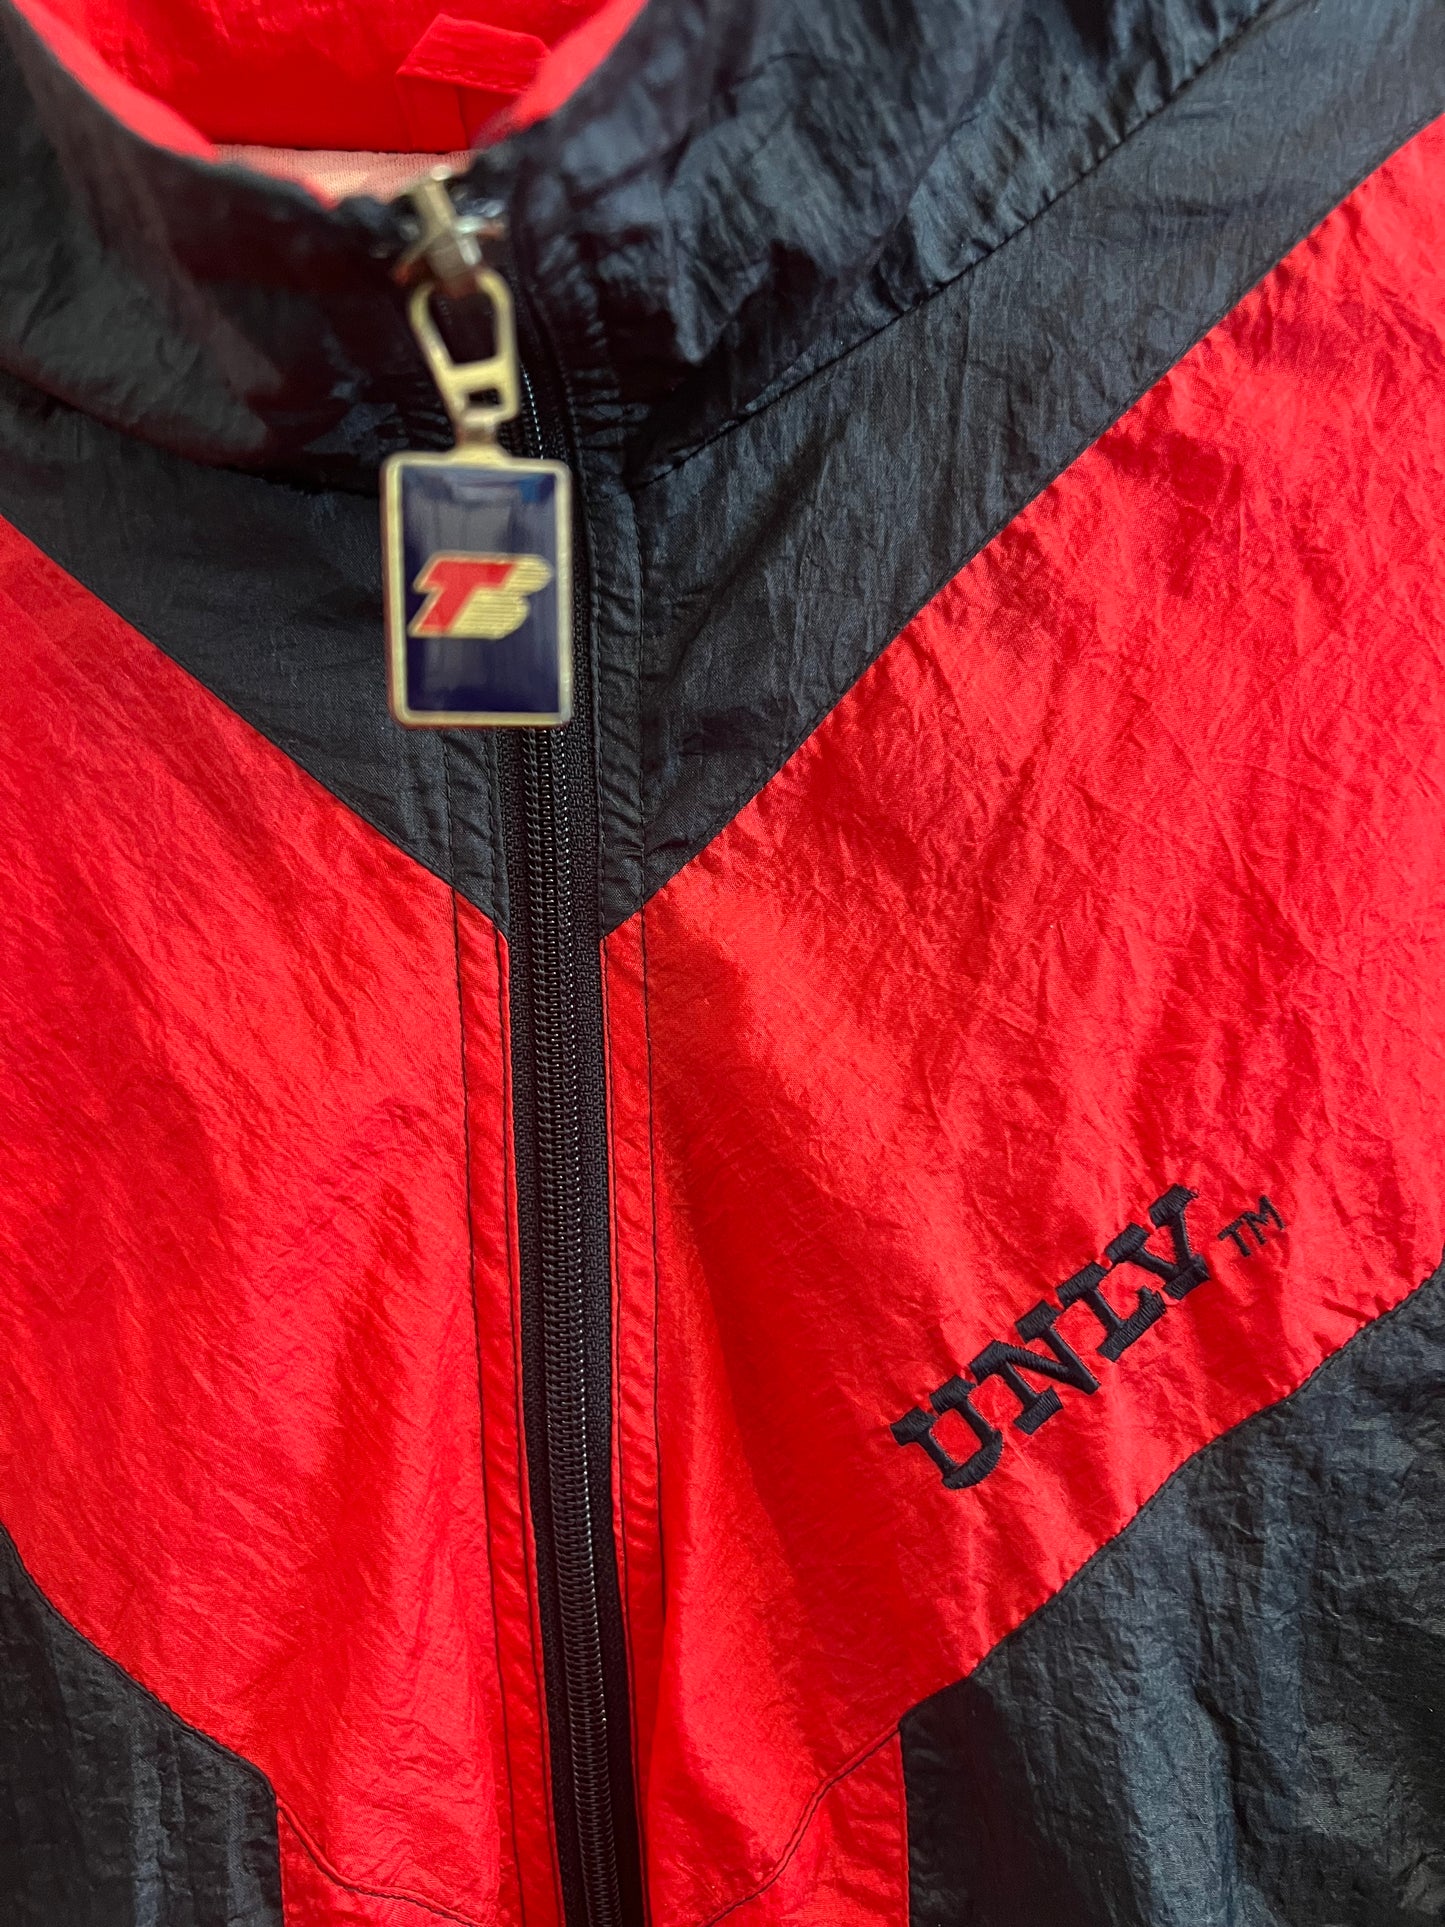 Vintage UNLV Rebels Jacket size XL